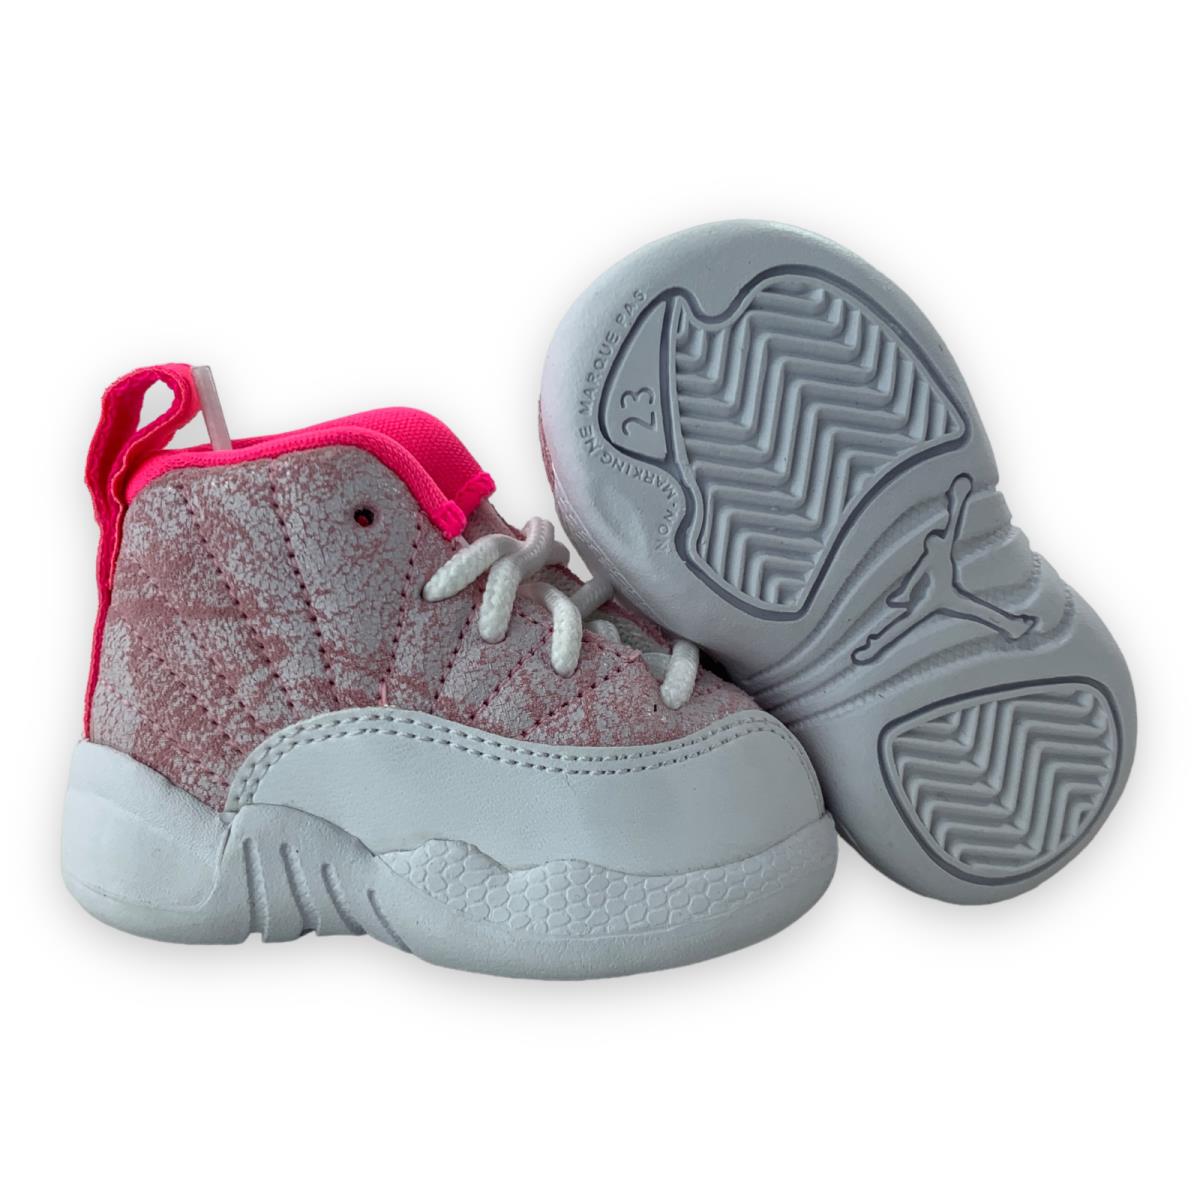 Nike Air Jordan 12 Retro TD Arctic Pink Hyper Pink Sneakers Shoes 819666-101 2C